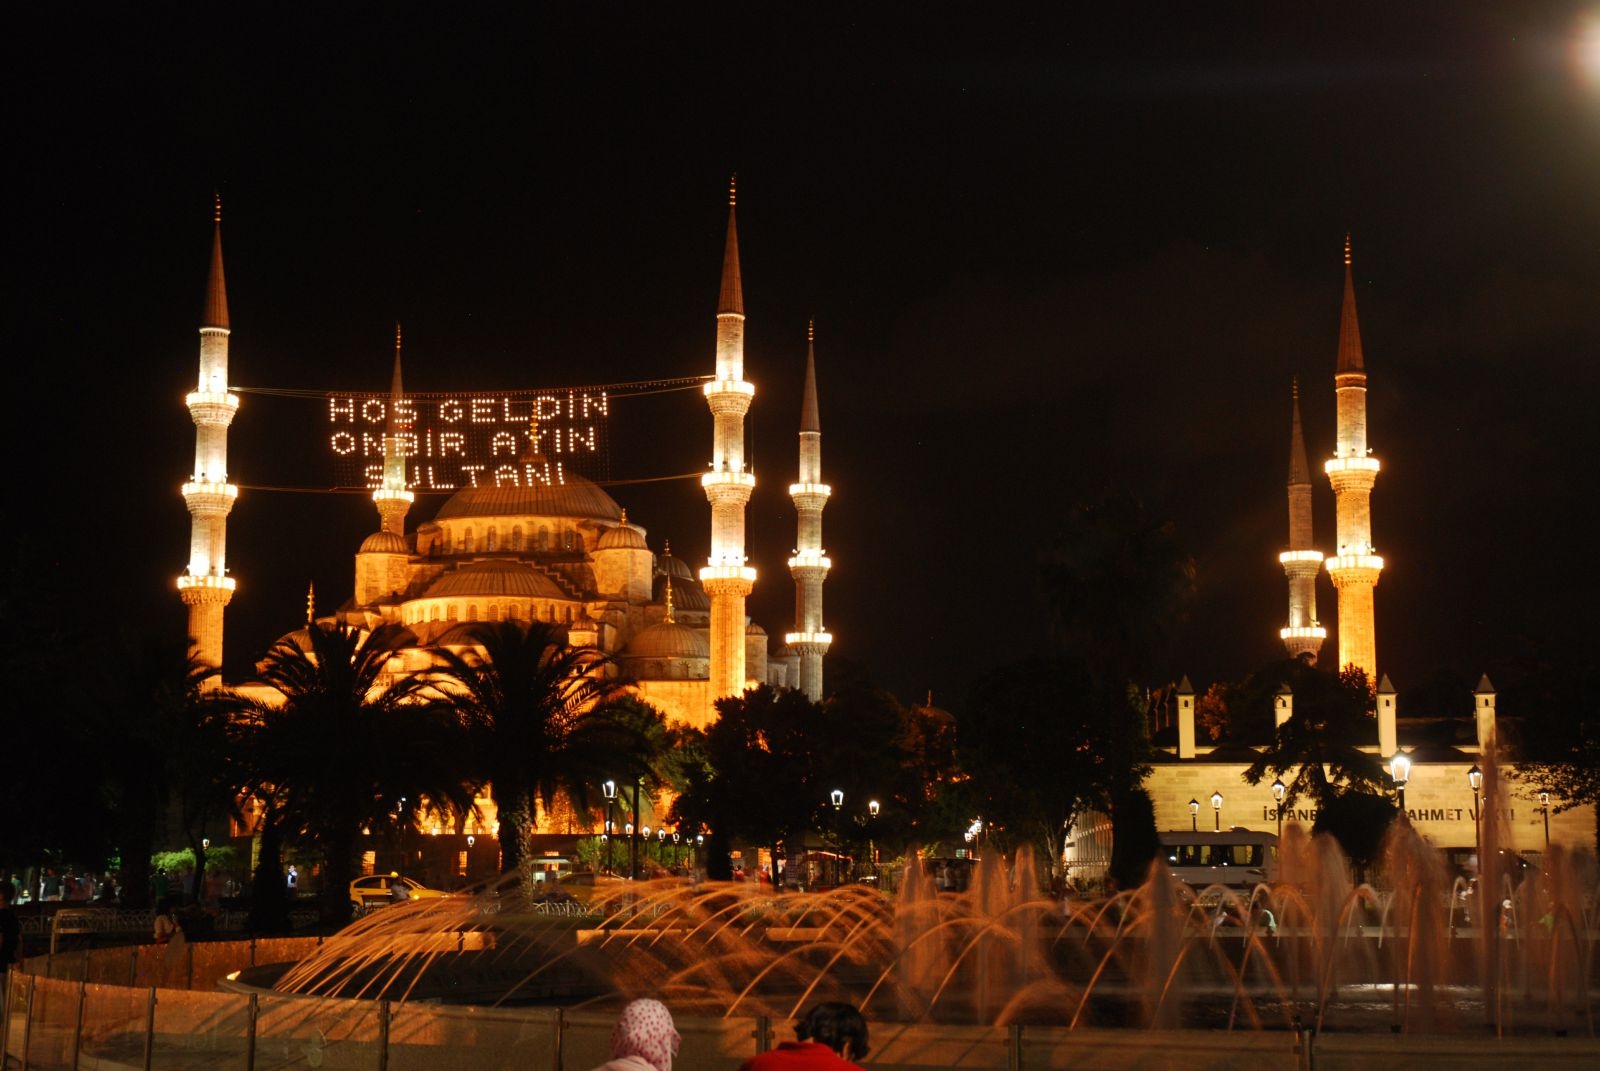 جامع آيا صوفيا يعد من أكبر الجوامع في إسطنبول